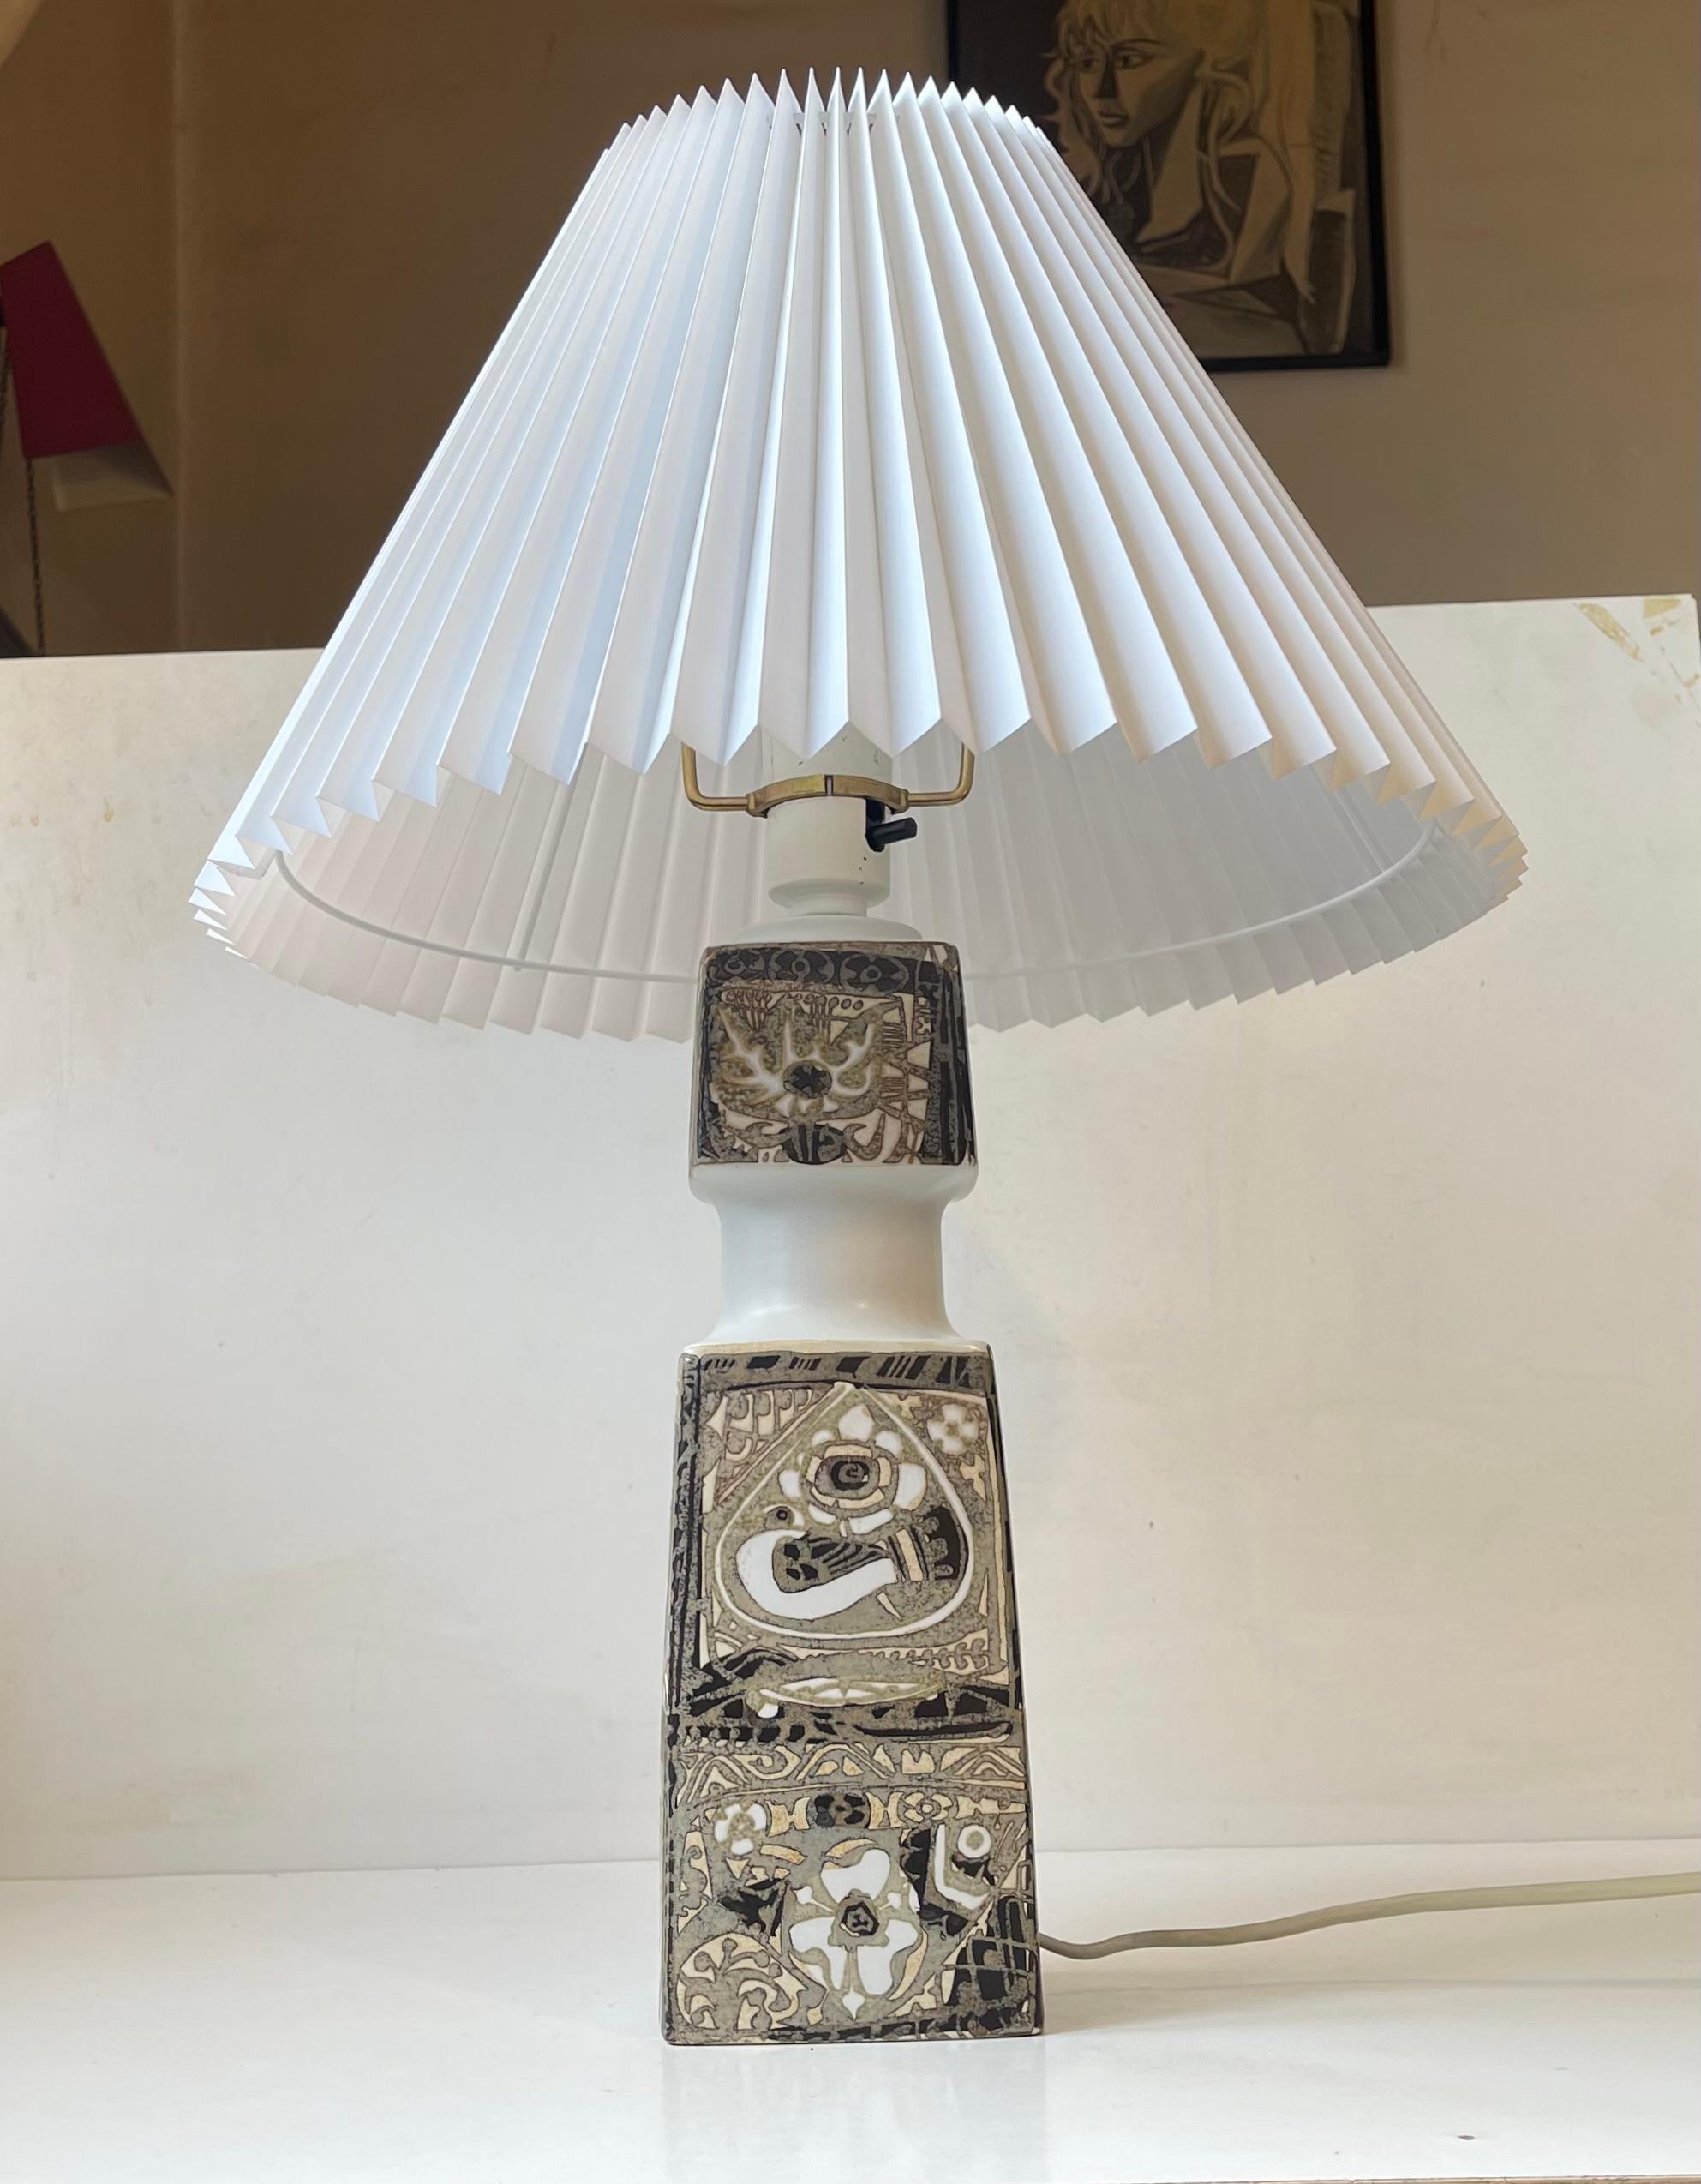 Monumentale Keramik-Tischlampe 'Baca', entworfen von Nils Thorsson für Royal Copenhagen und Fog & Mørup um 1970. Sie weist ein taktiles abstraktes Dekor auf, das mit eathetischen Glasuren ausgeführt ist. Der Ein/Aus-Schalter ist an der Steckdose